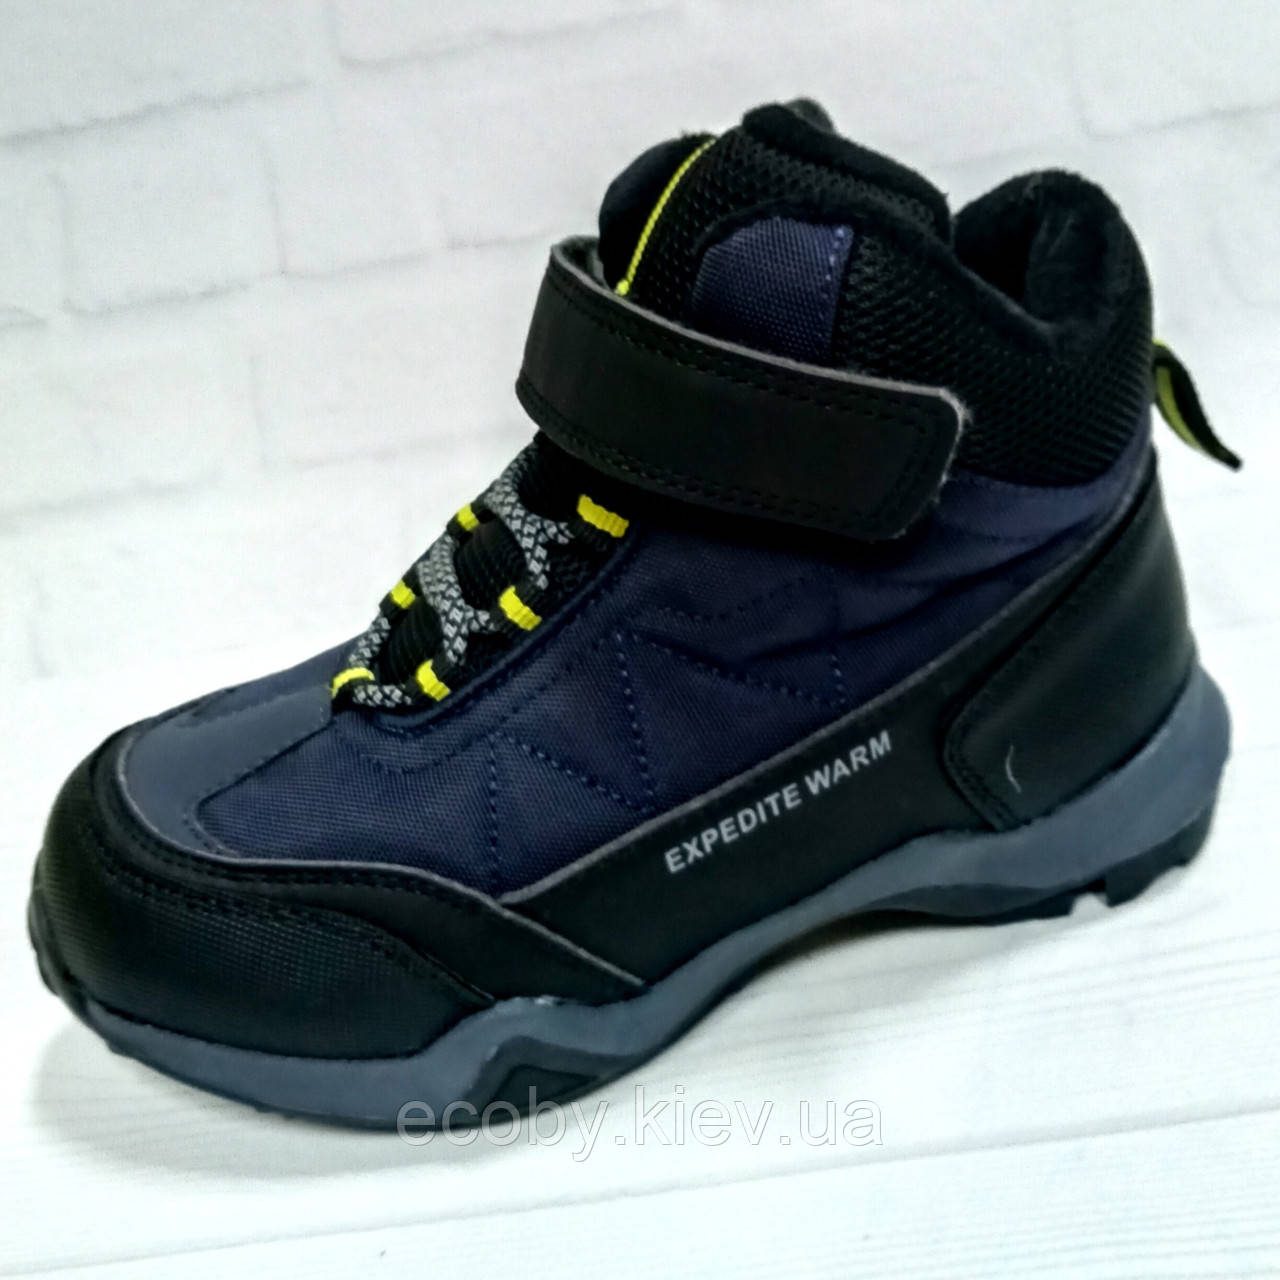 Зимові дитячі черевики, термочеревики для хлопчика тм Jong-Golf, розміри 32- 39, сині